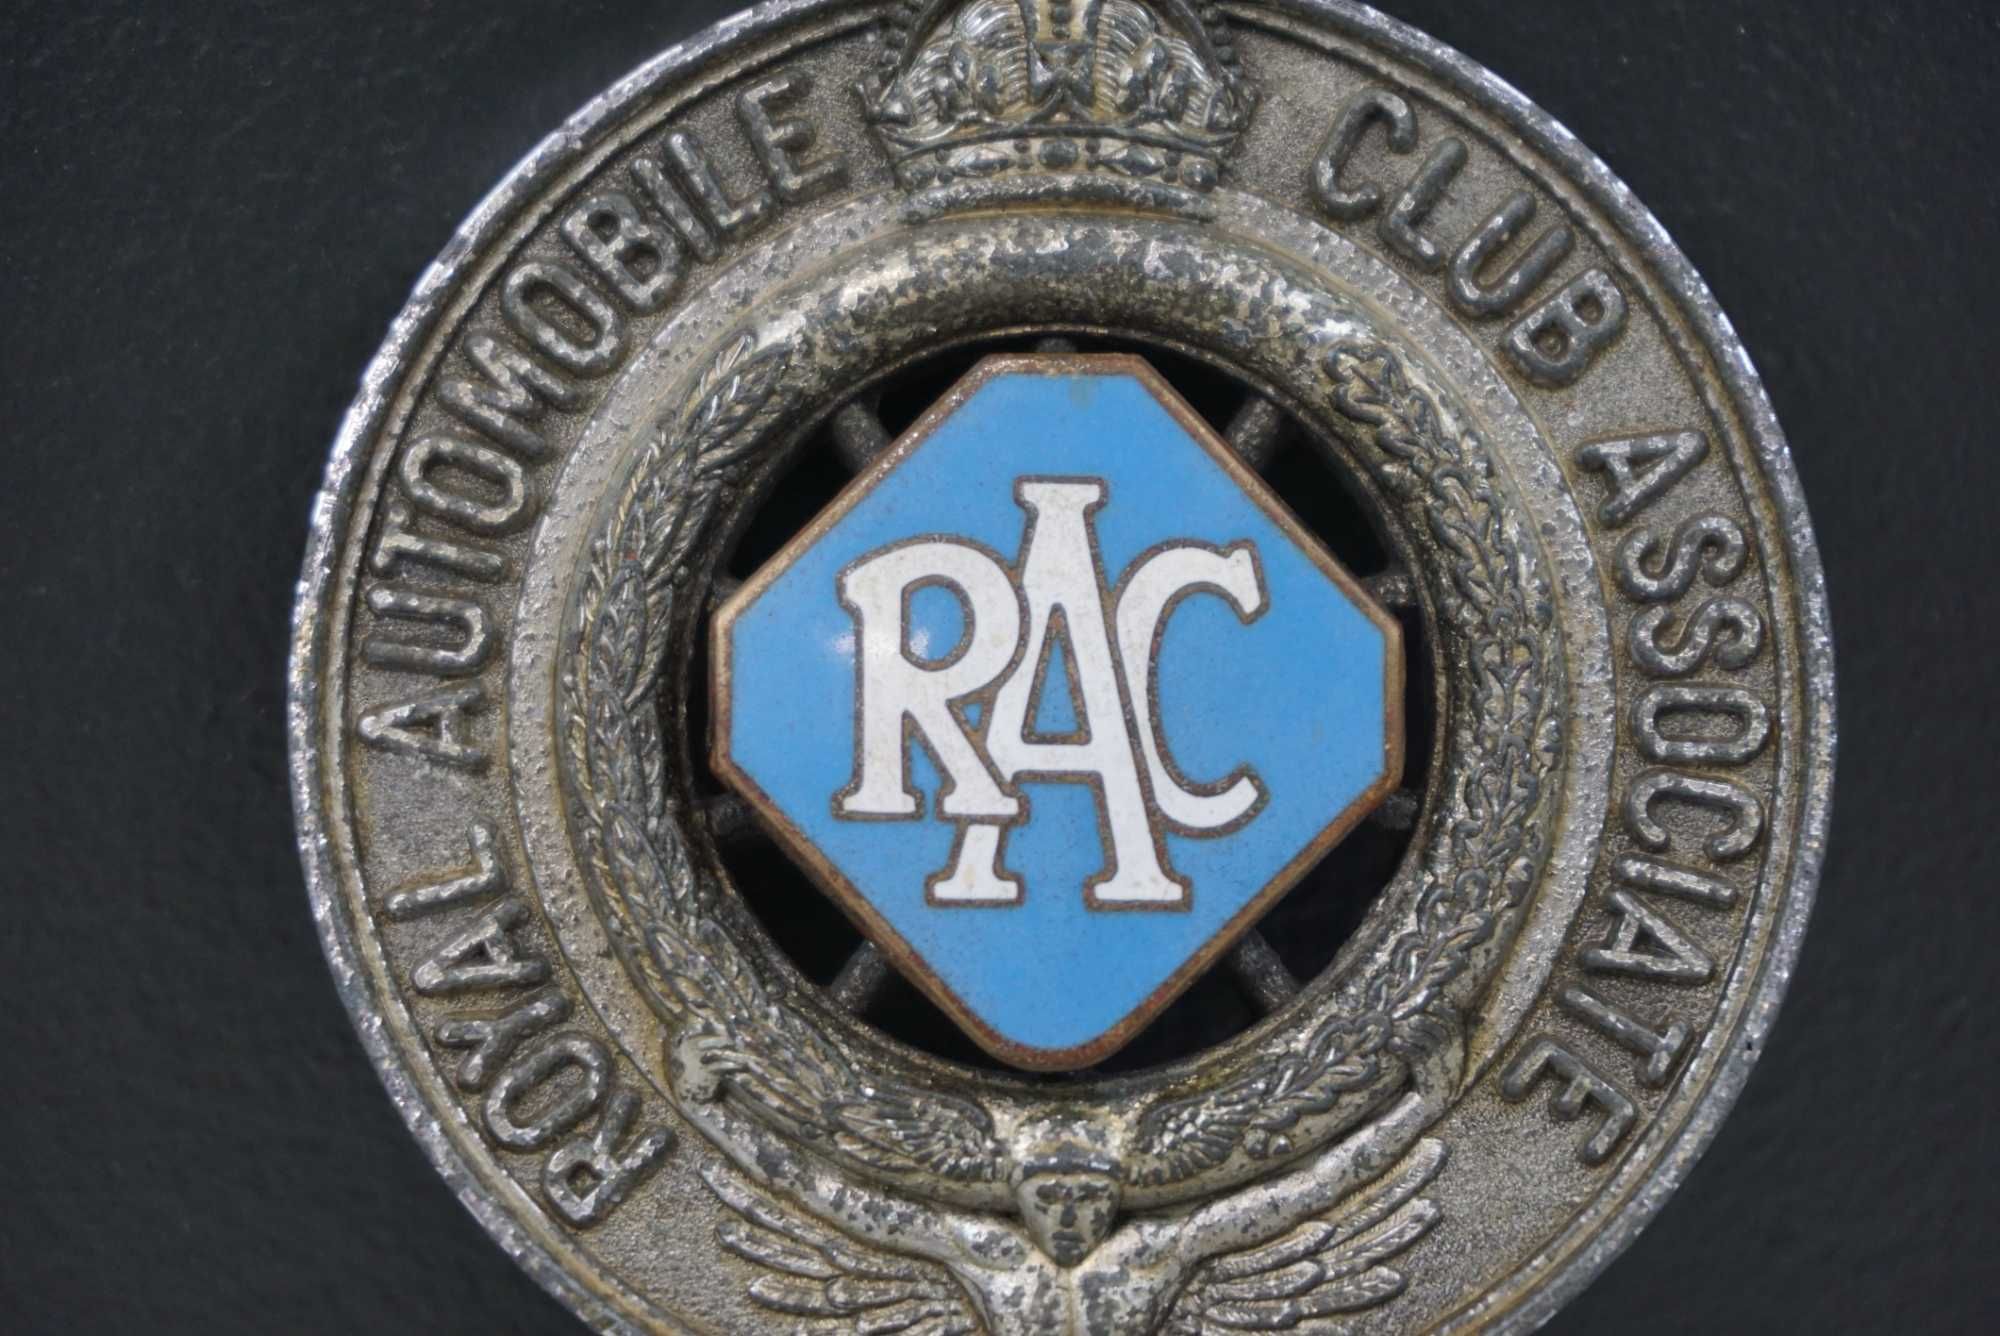 Royal Automobile Club emblemat znaczek lata 30te